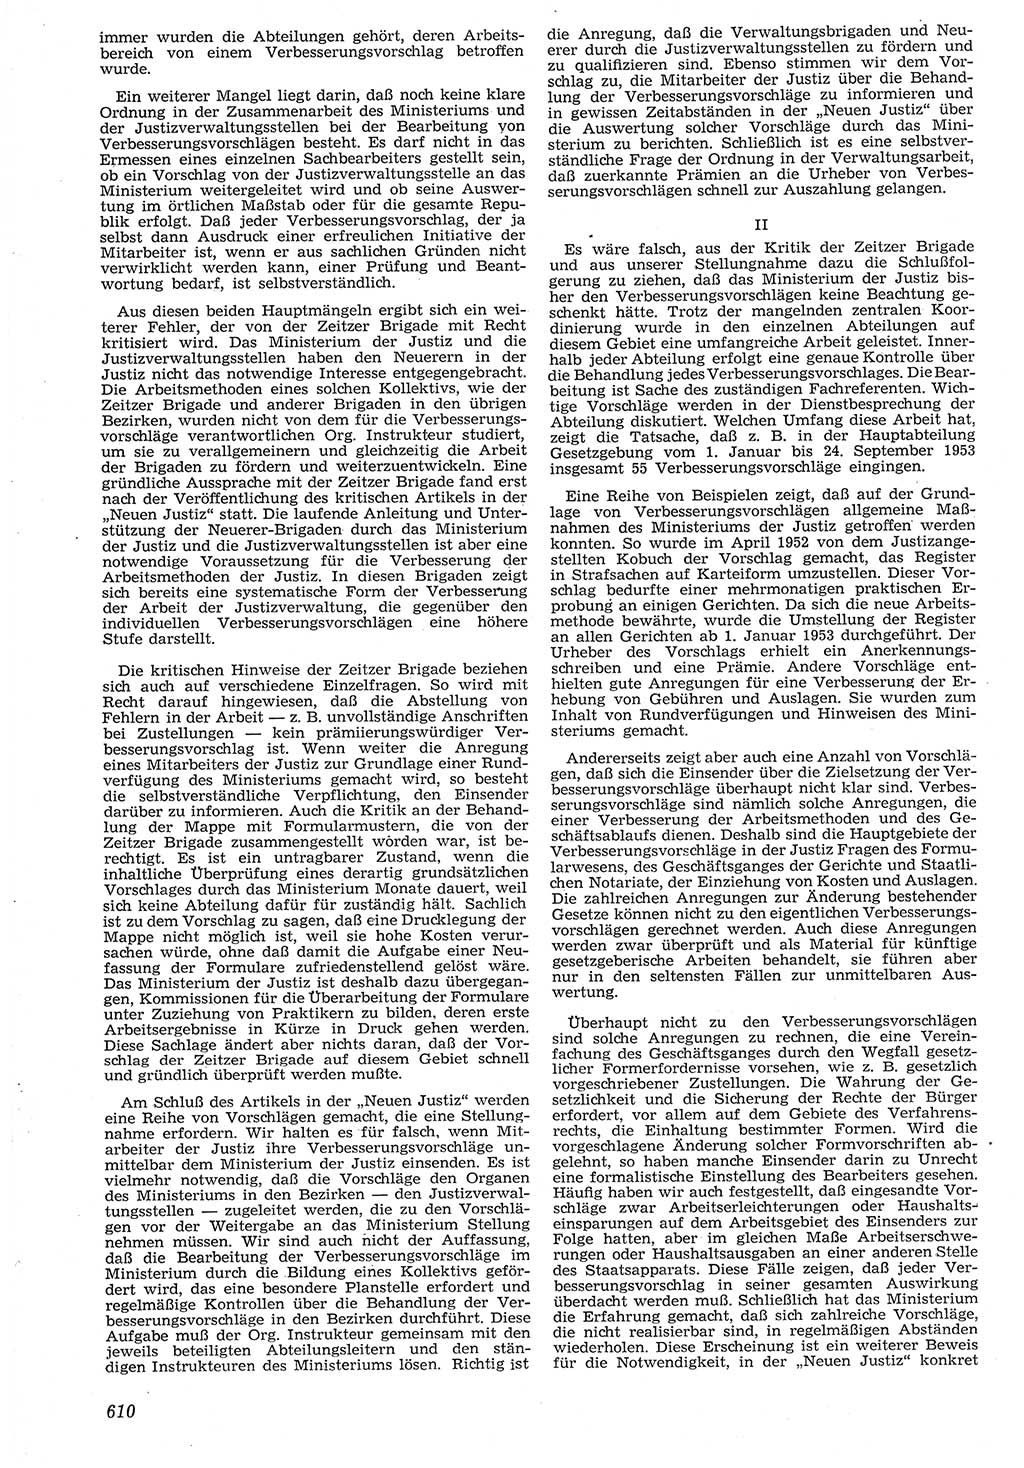 Neue Justiz (NJ), Zeitschrift für Recht und Rechtswissenschaft [Deutsche Demokratische Republik (DDR)], 7. Jahrgang 1953, Seite 610 (NJ DDR 1953, S. 610)